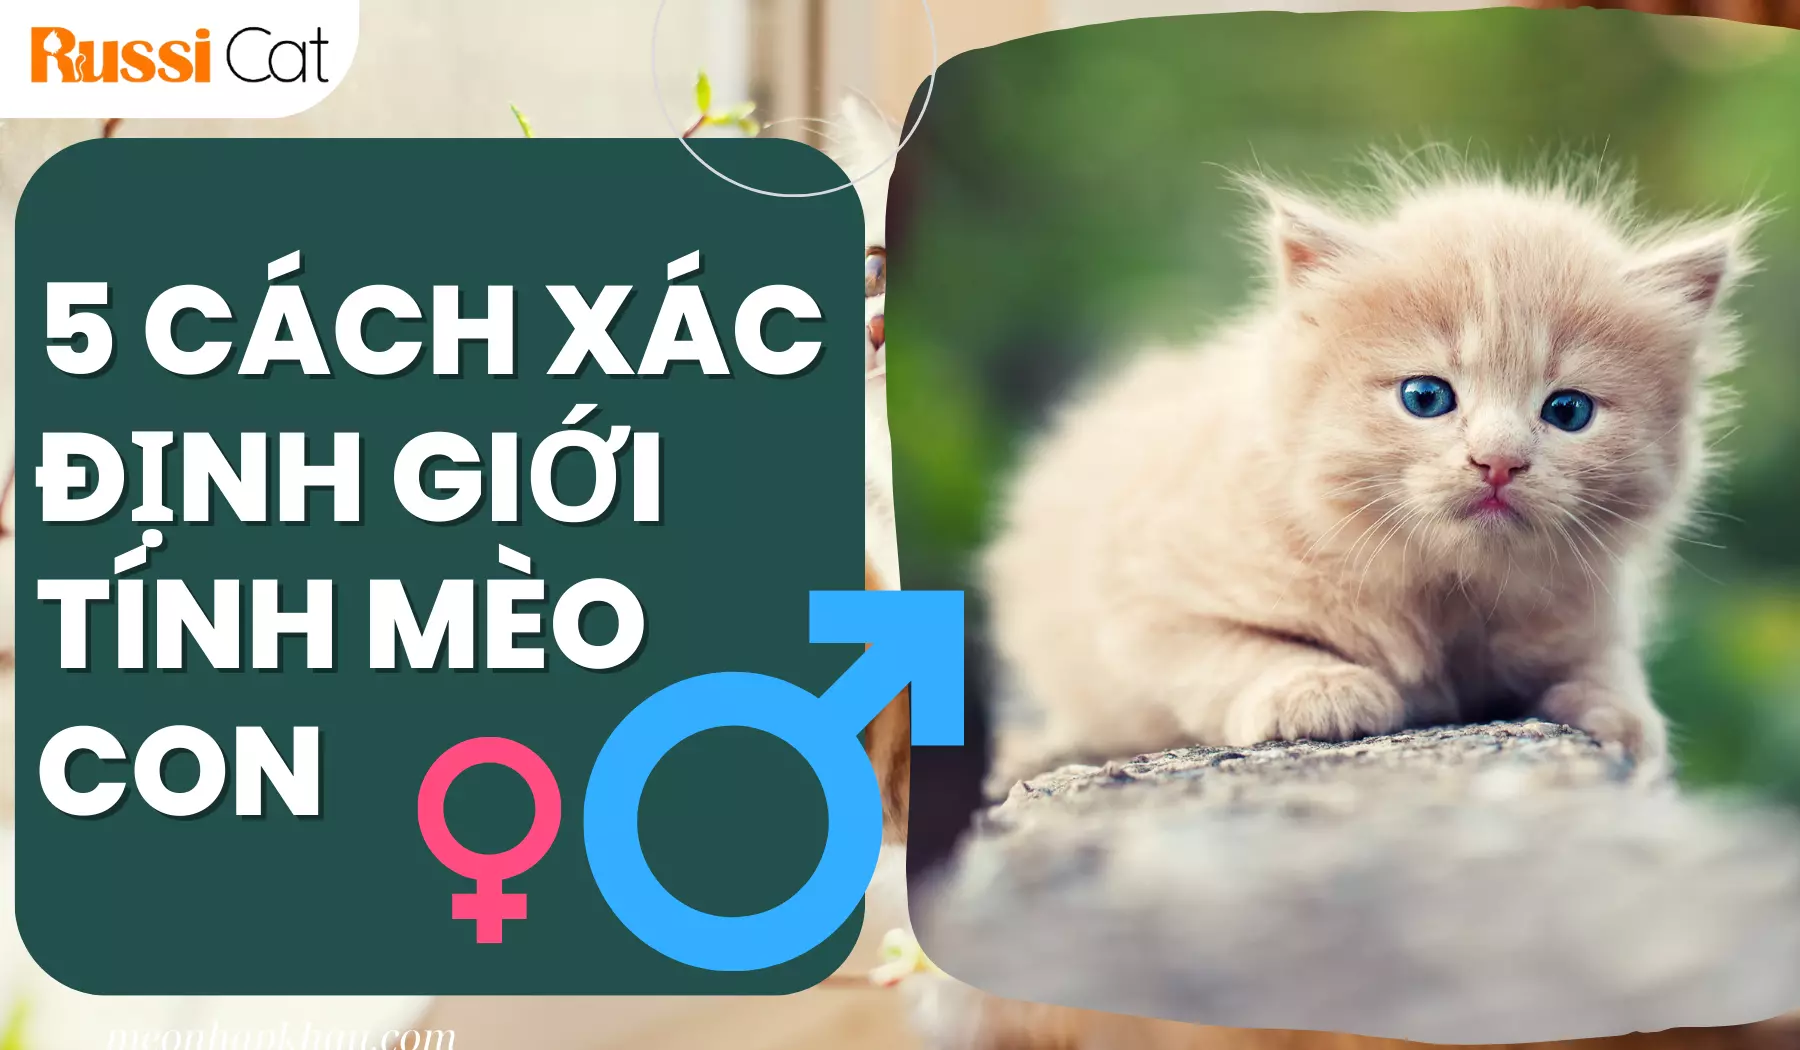 5 Cách xác định giới tính mèo con